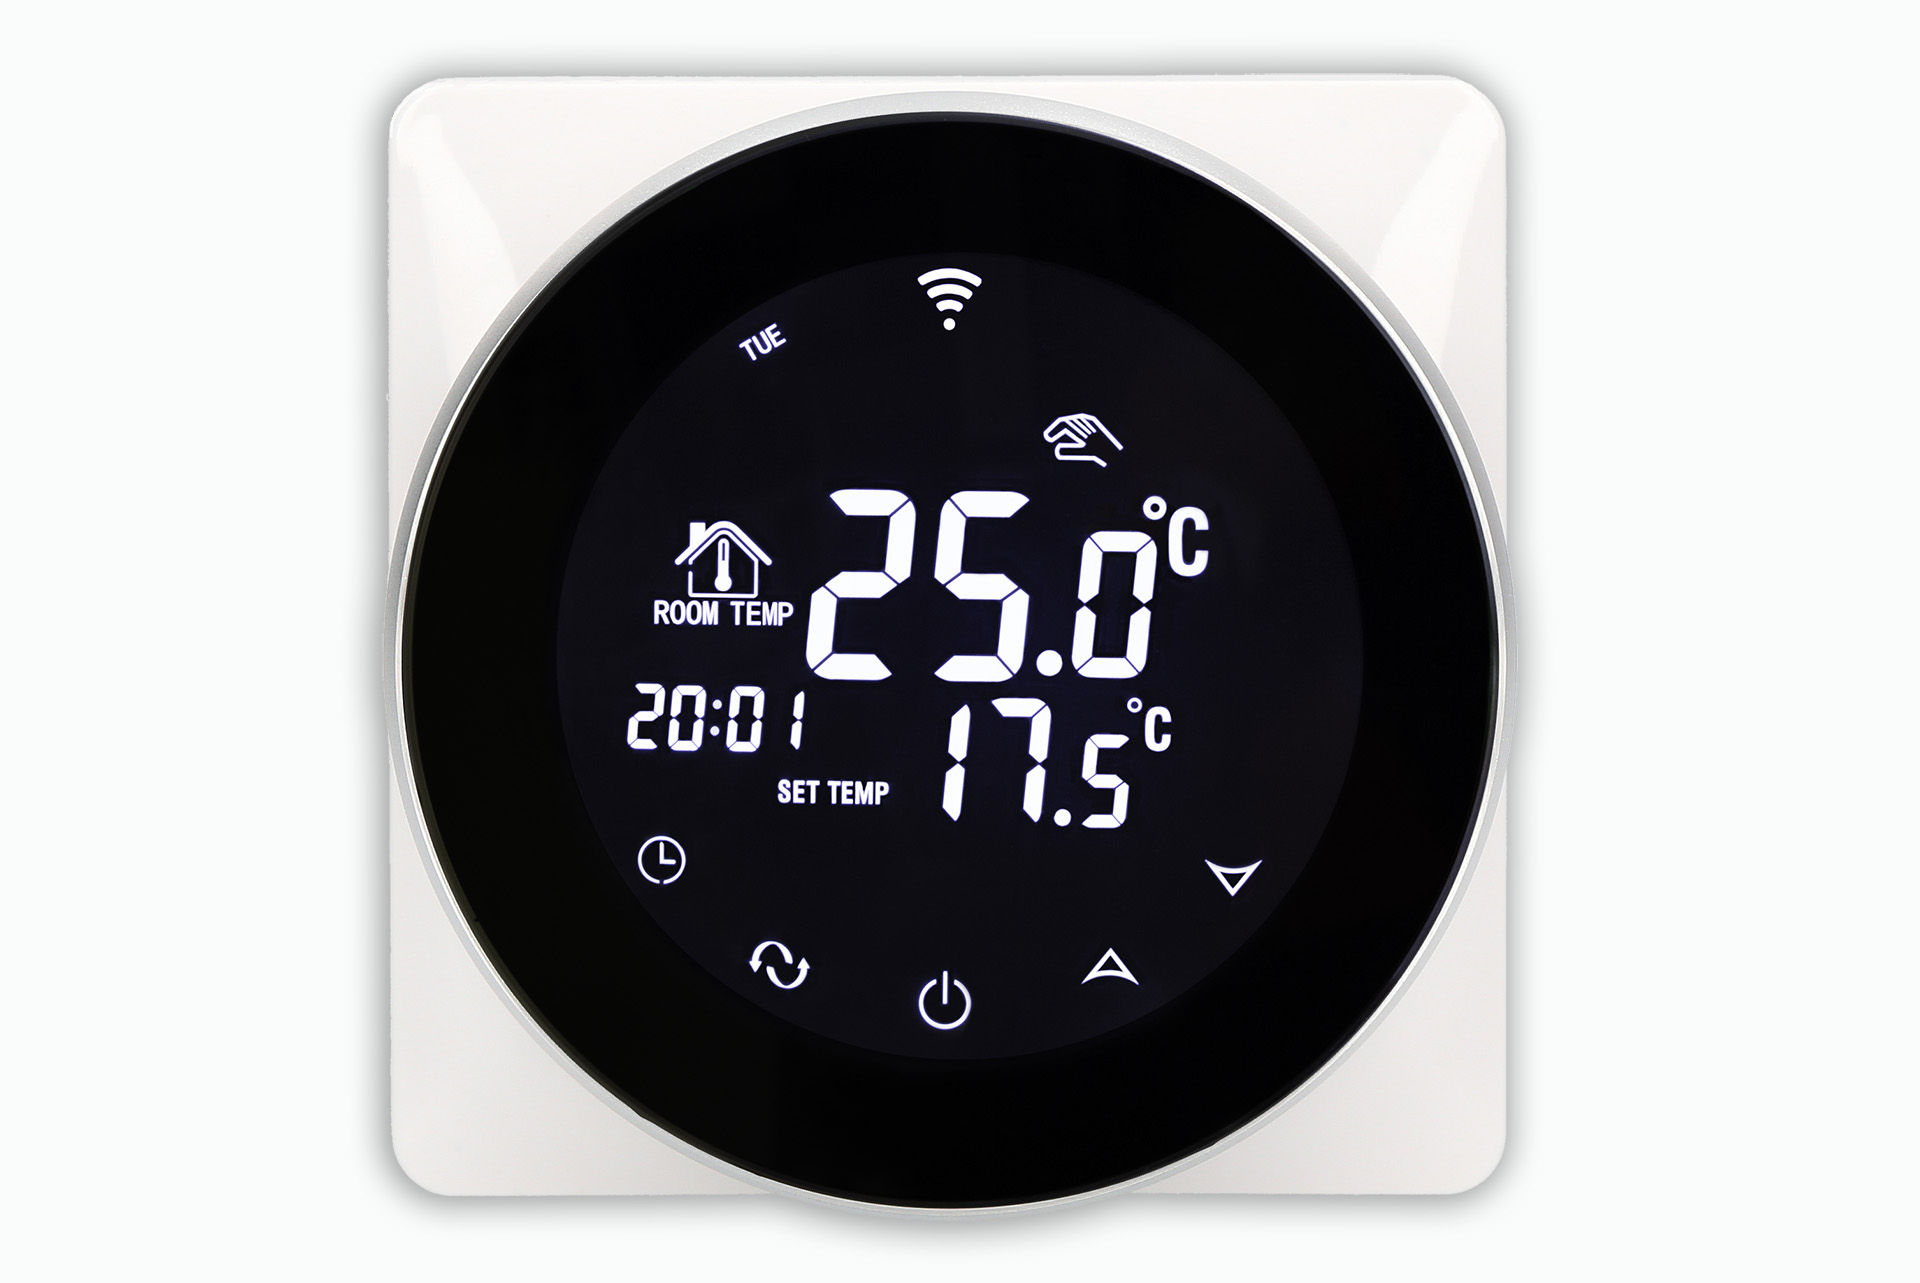 Aluzan Point-3 WiFi, programovatelný pokojový termostat pro spínání kotlů, ovladatelný na dálku pomocí aplikace Android nebo iOS